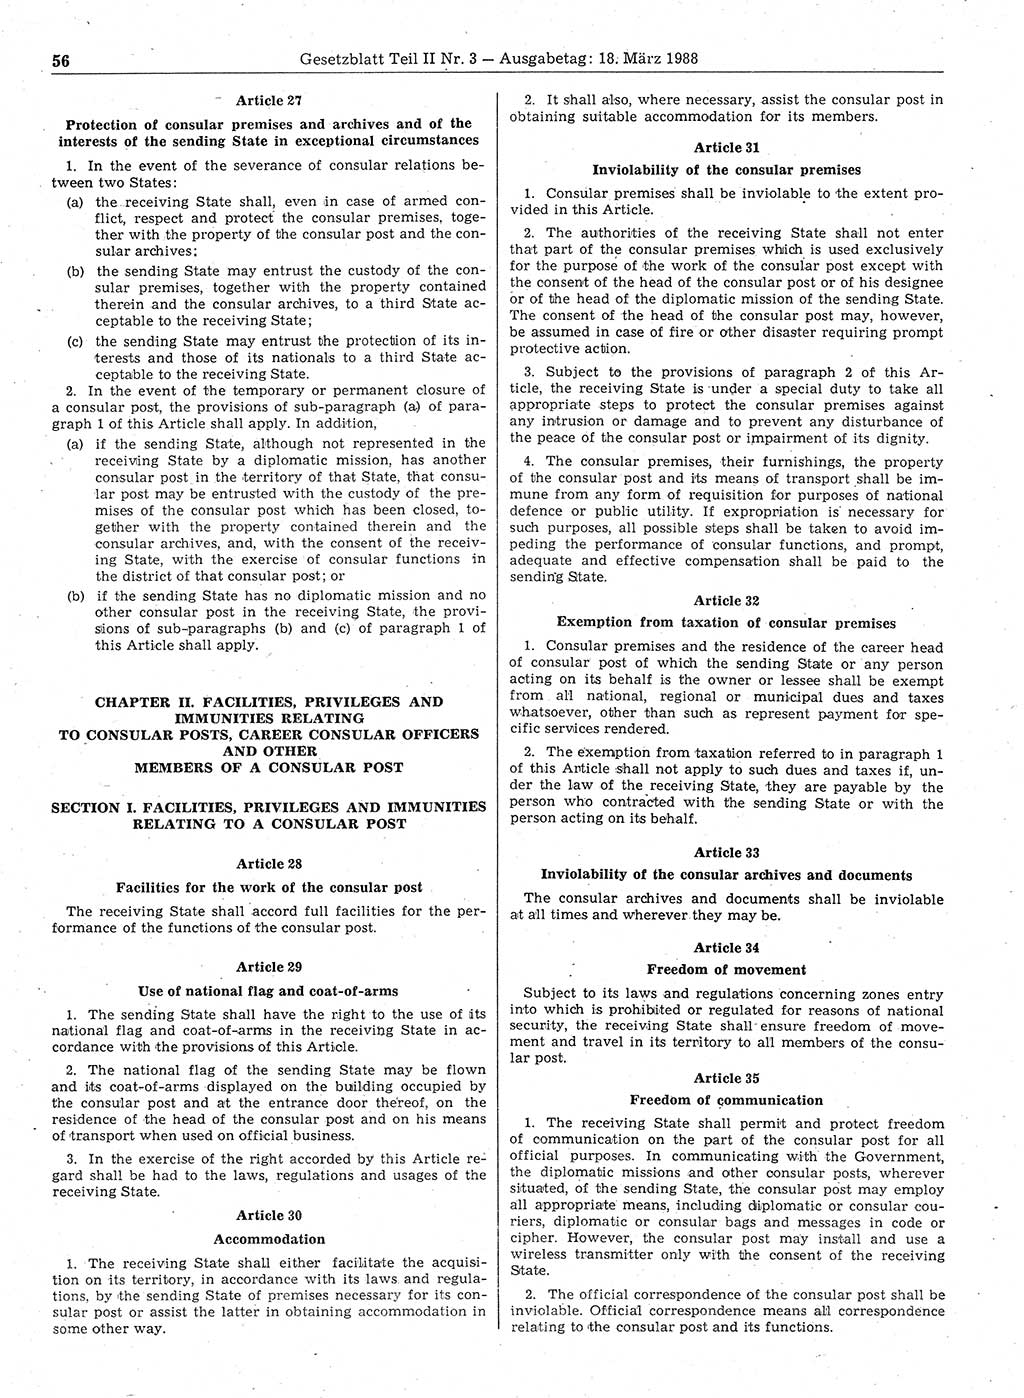 Gesetzblatt (GBl.) der Deutschen Demokratischen Republik (DDR) Teil ⅠⅠ 1988, Seite 56 (GBl. DDR ⅠⅠ 1988, S. 56)